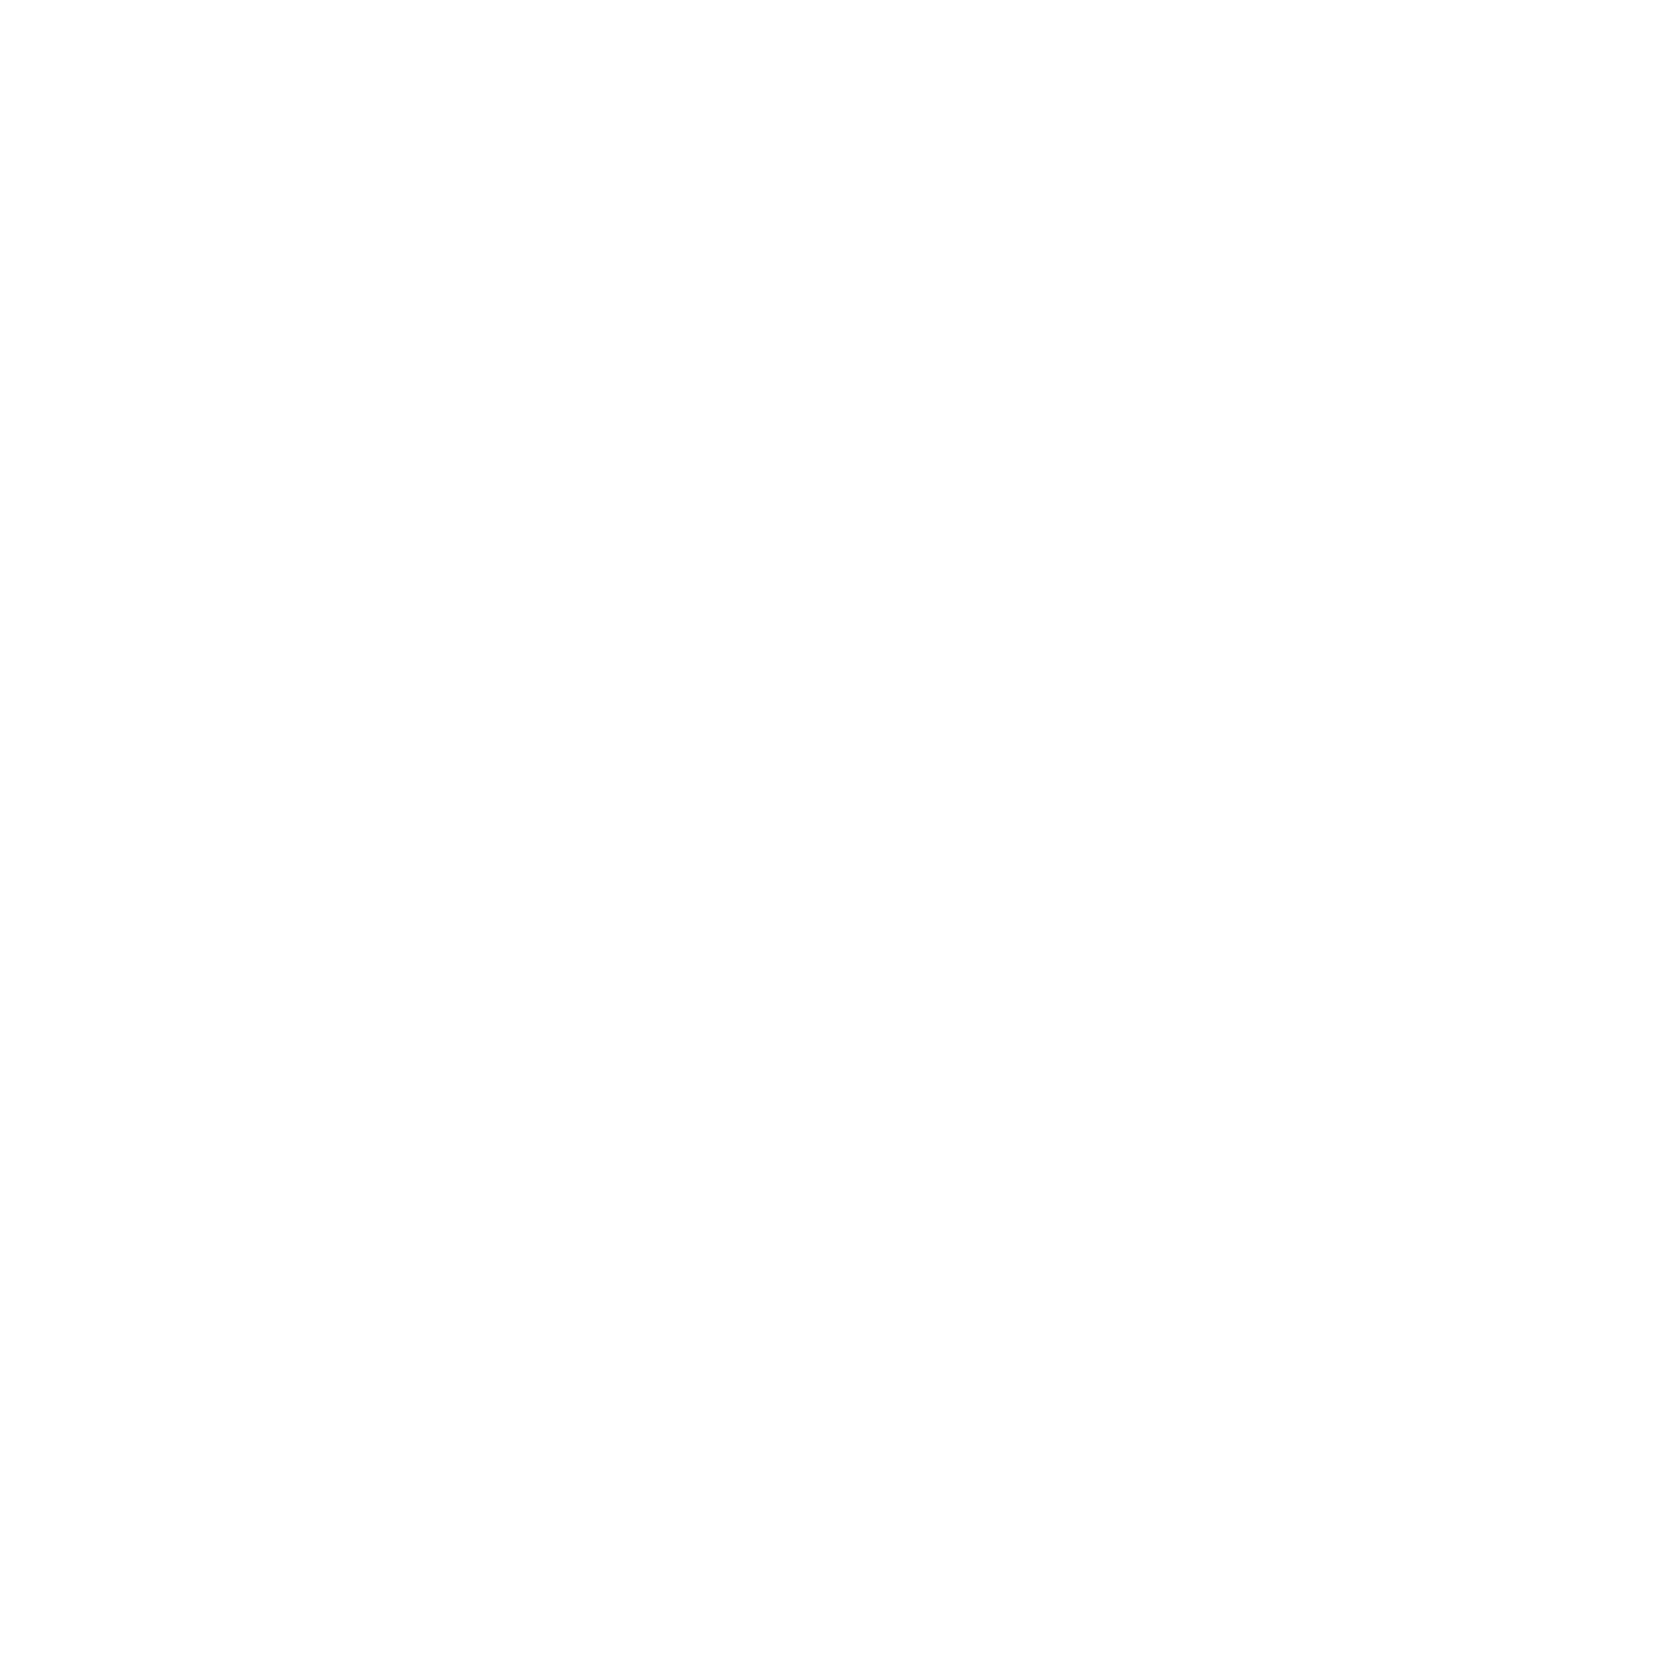 Картина «Портрет Веры» (фрагмент), автор Олег Калитеня, написана художником в жанре «Фигуративное искусство». Купить картину или заказать портрет можно на сайте галереи современного искусства DA's Art Depot